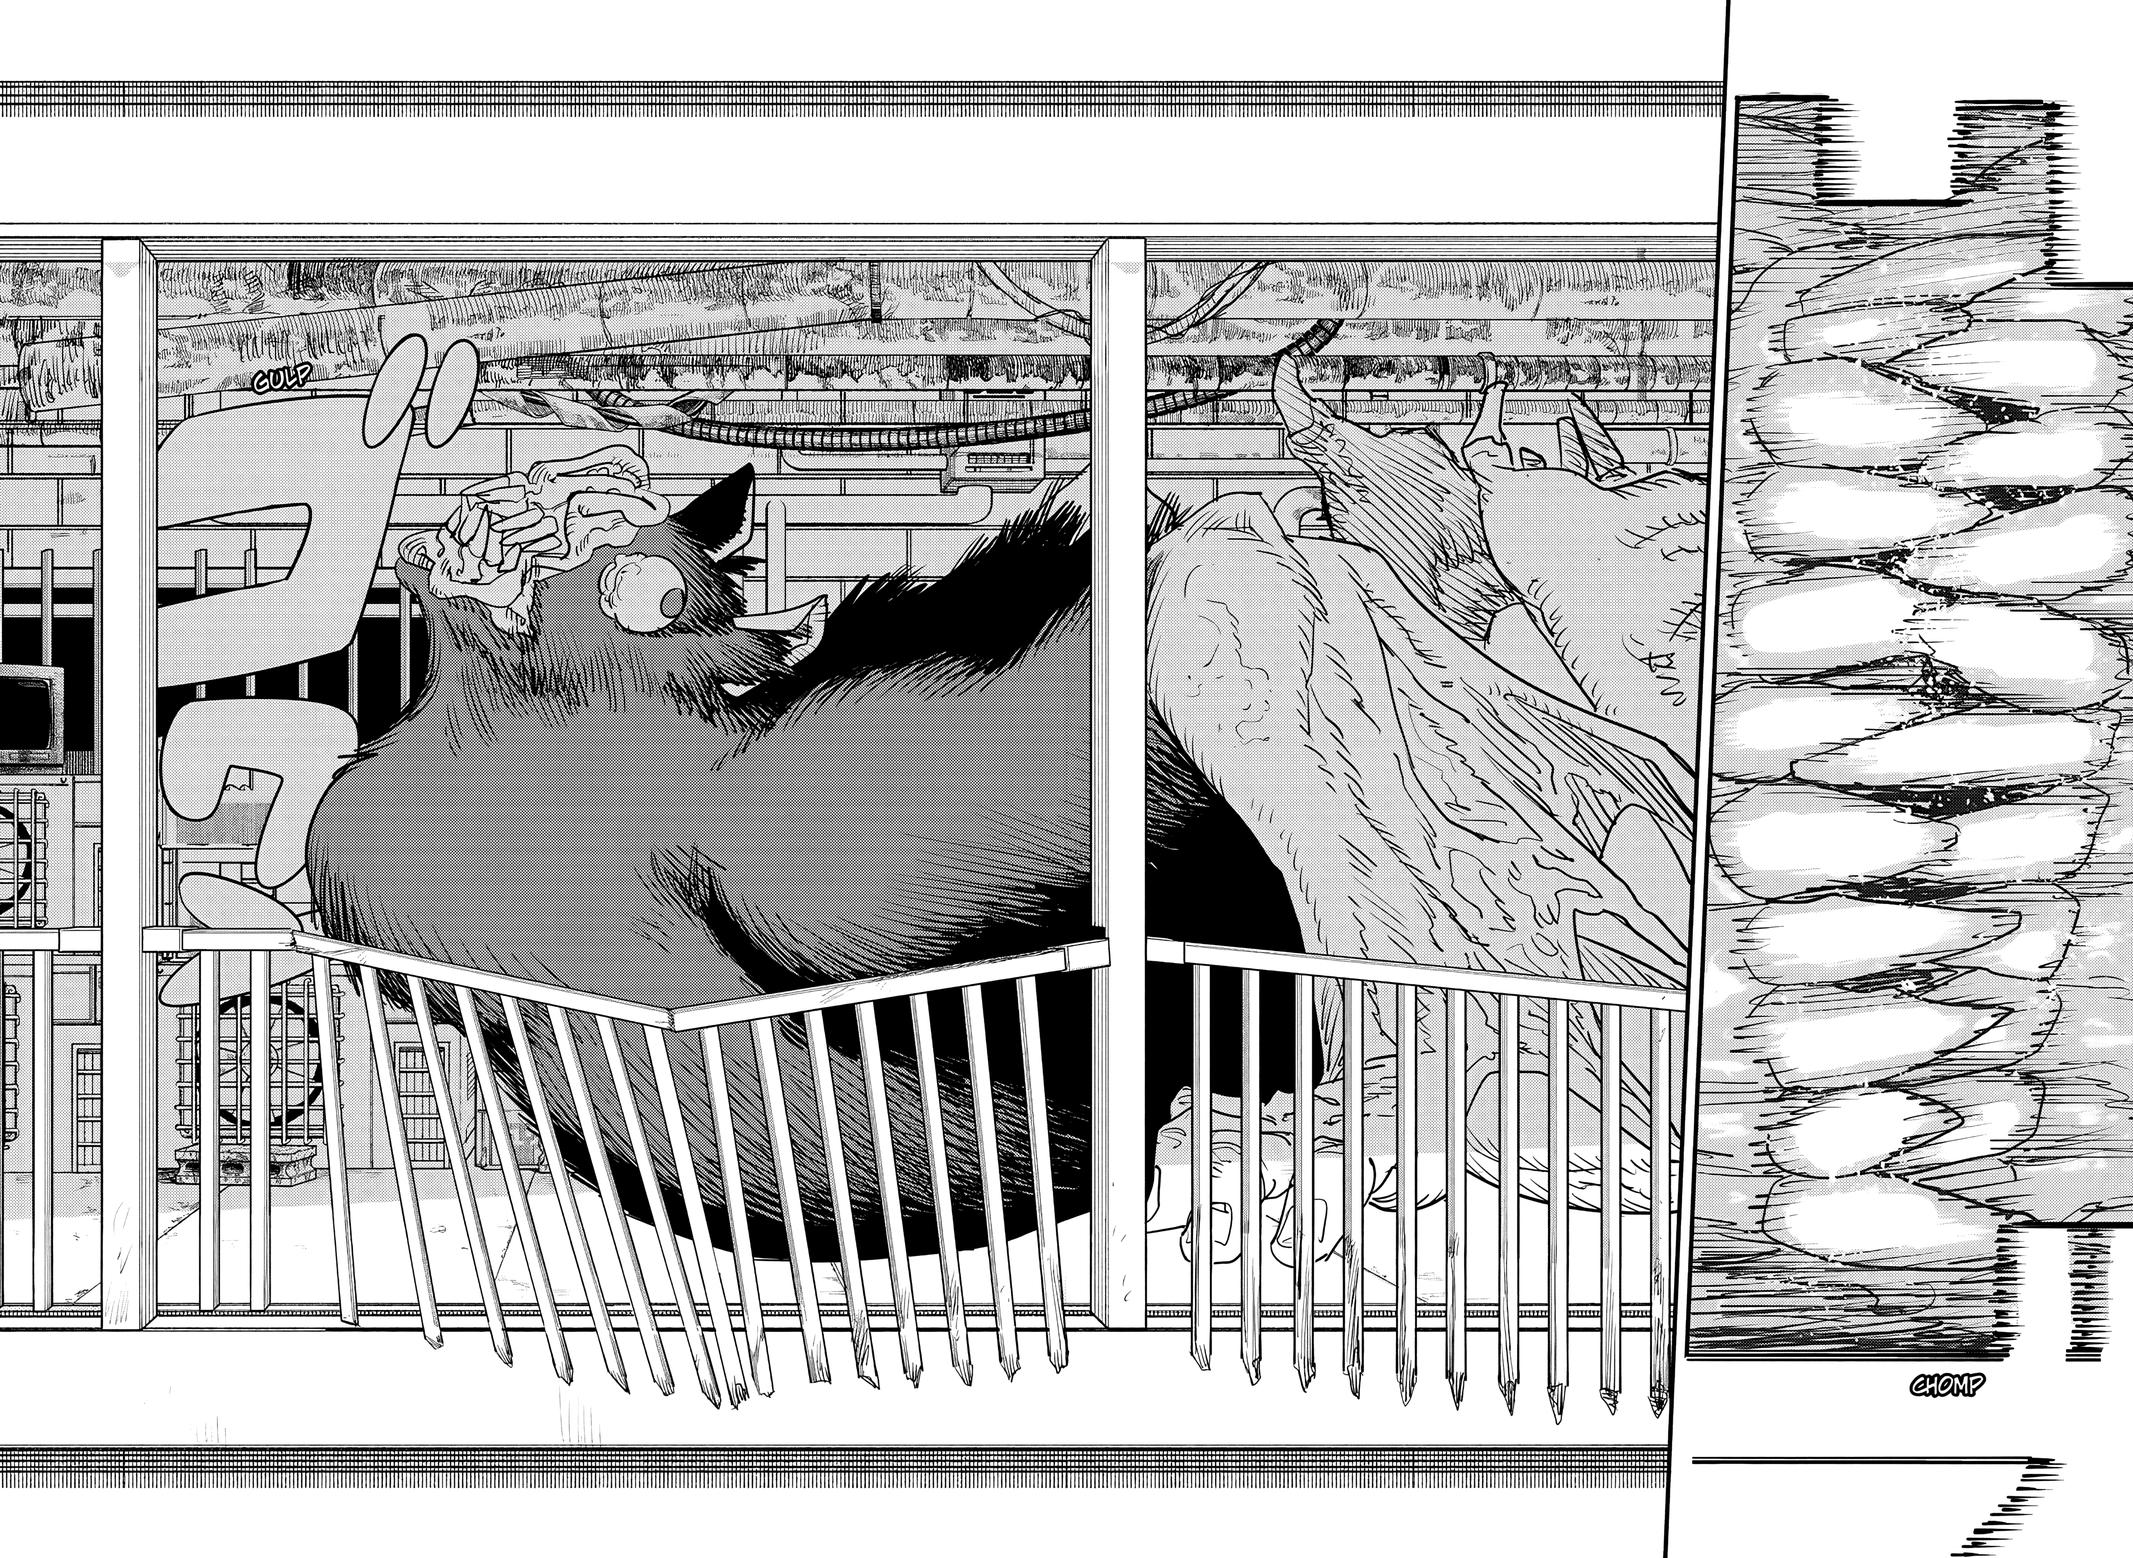 Chainsaw Man Manga Chapter - 102 - image 26